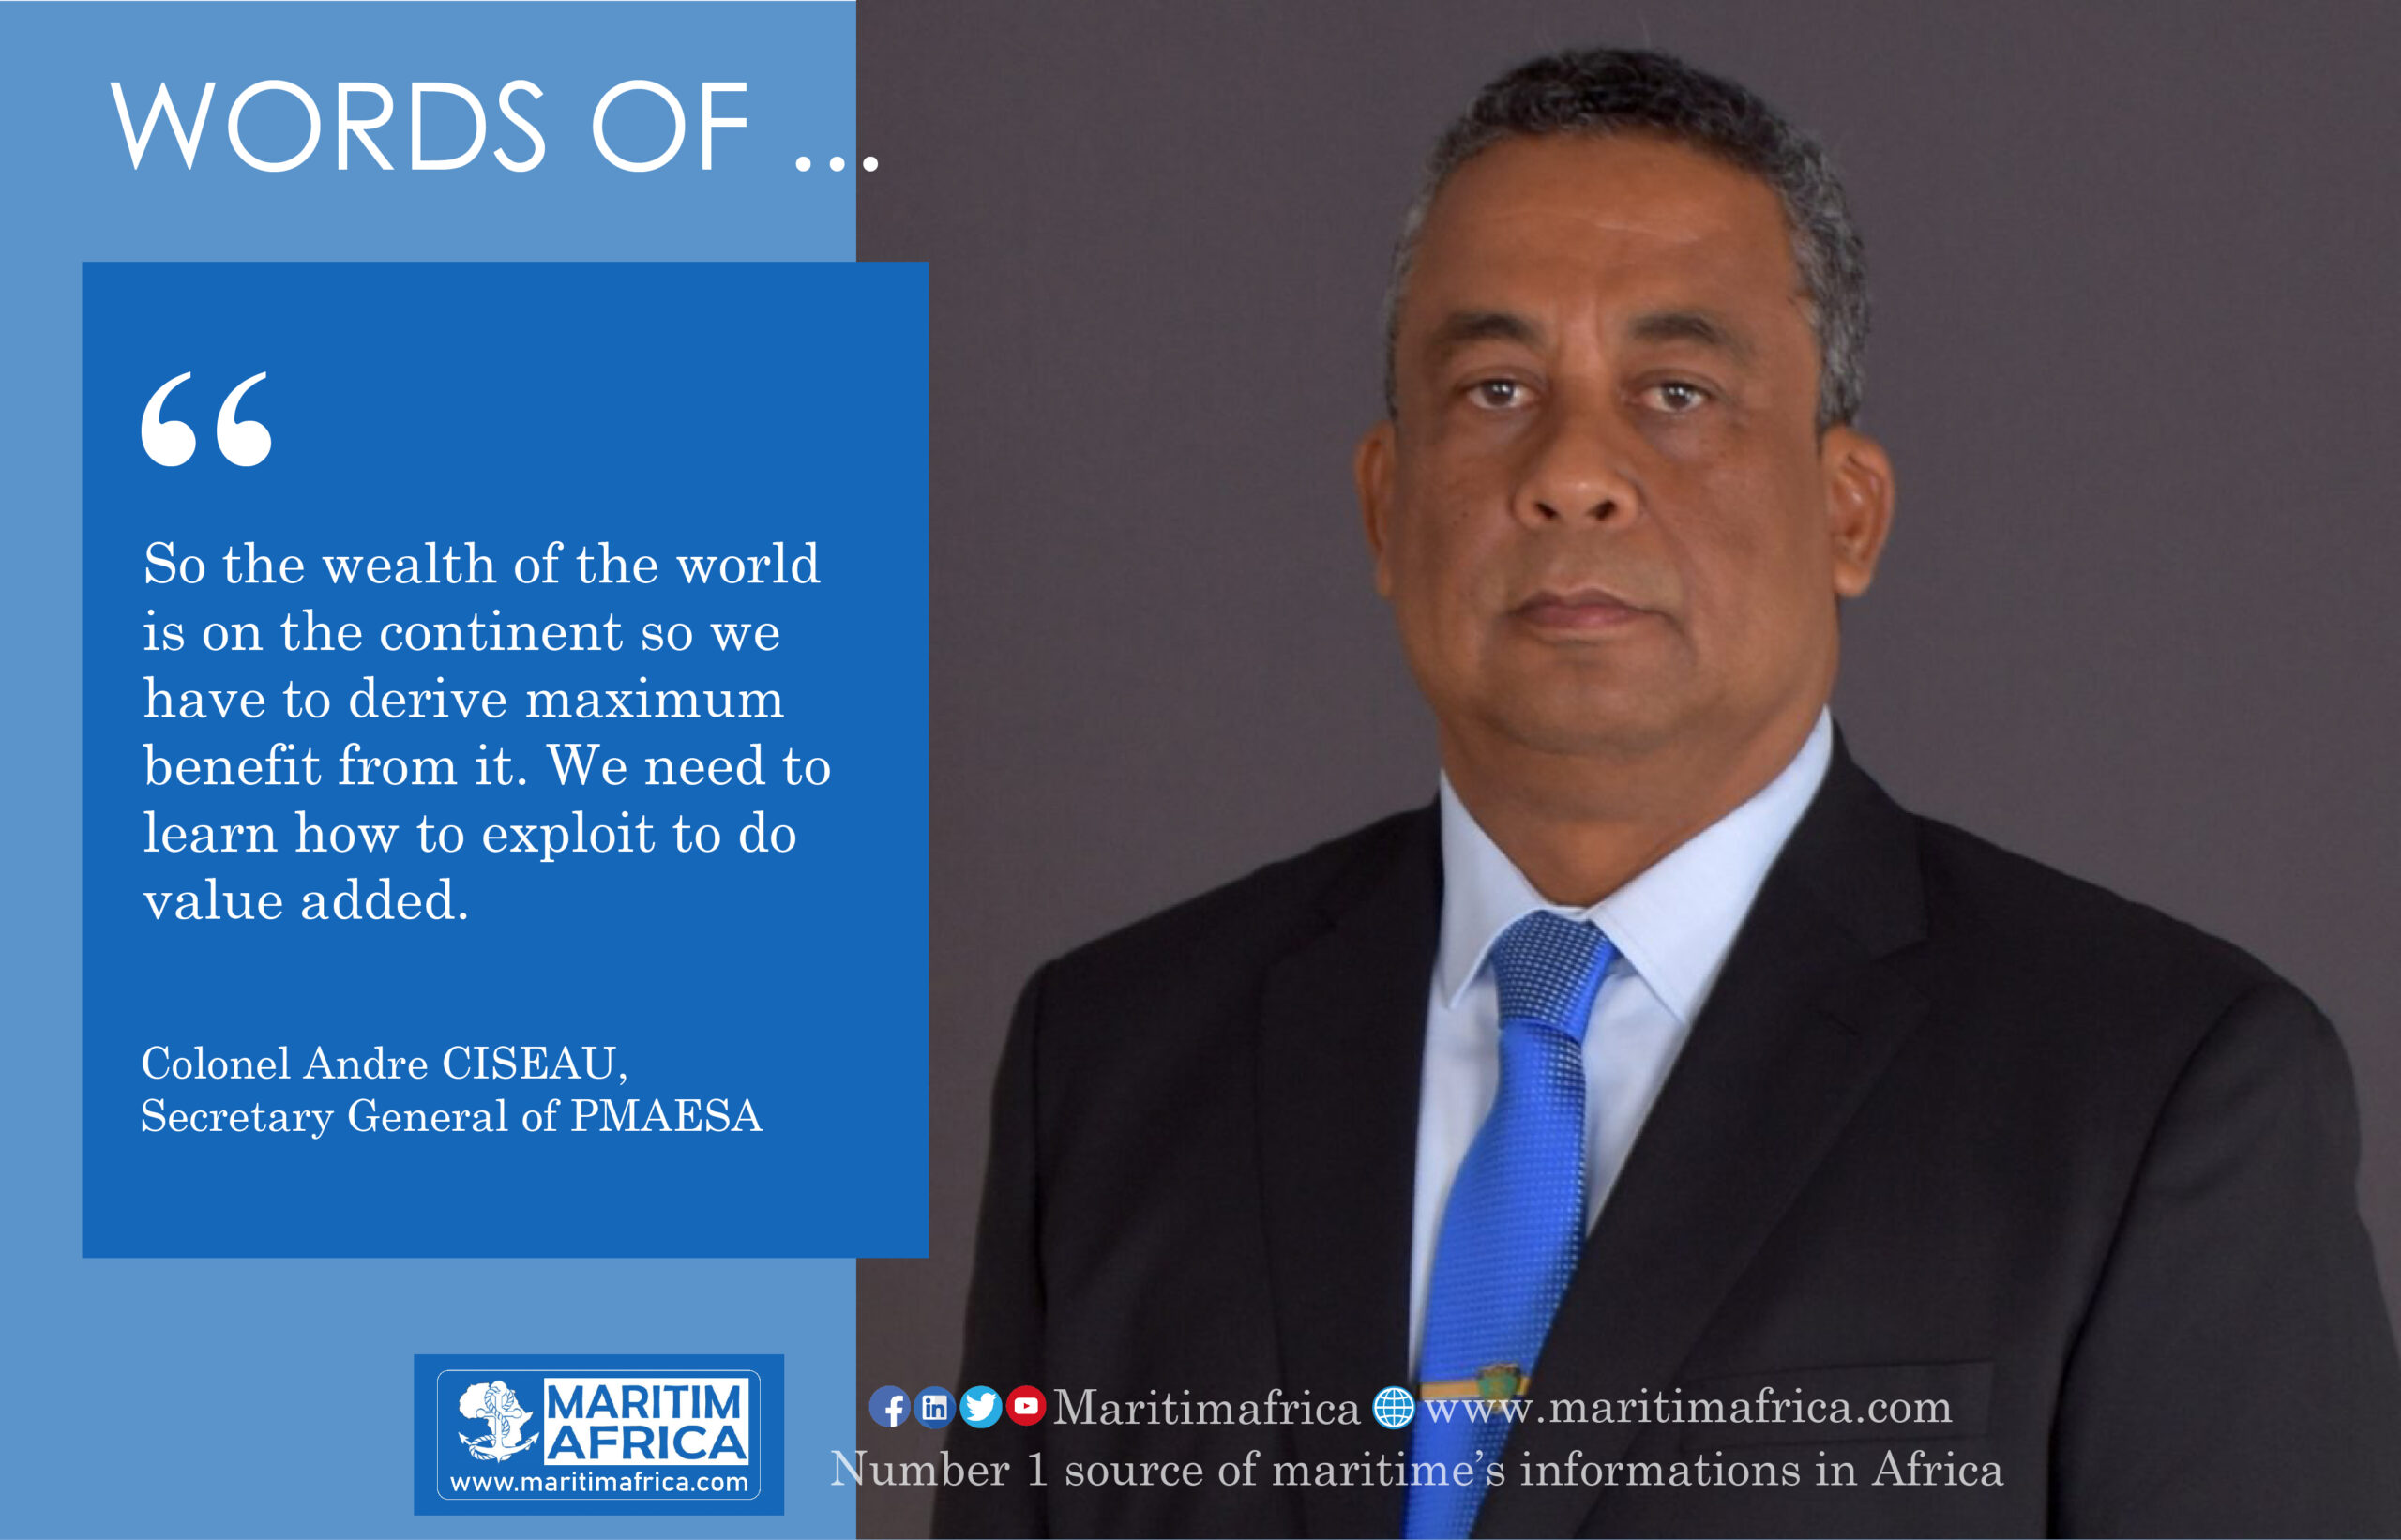 Words of Col. Andre CISEAU, Secretary General of PMAESA